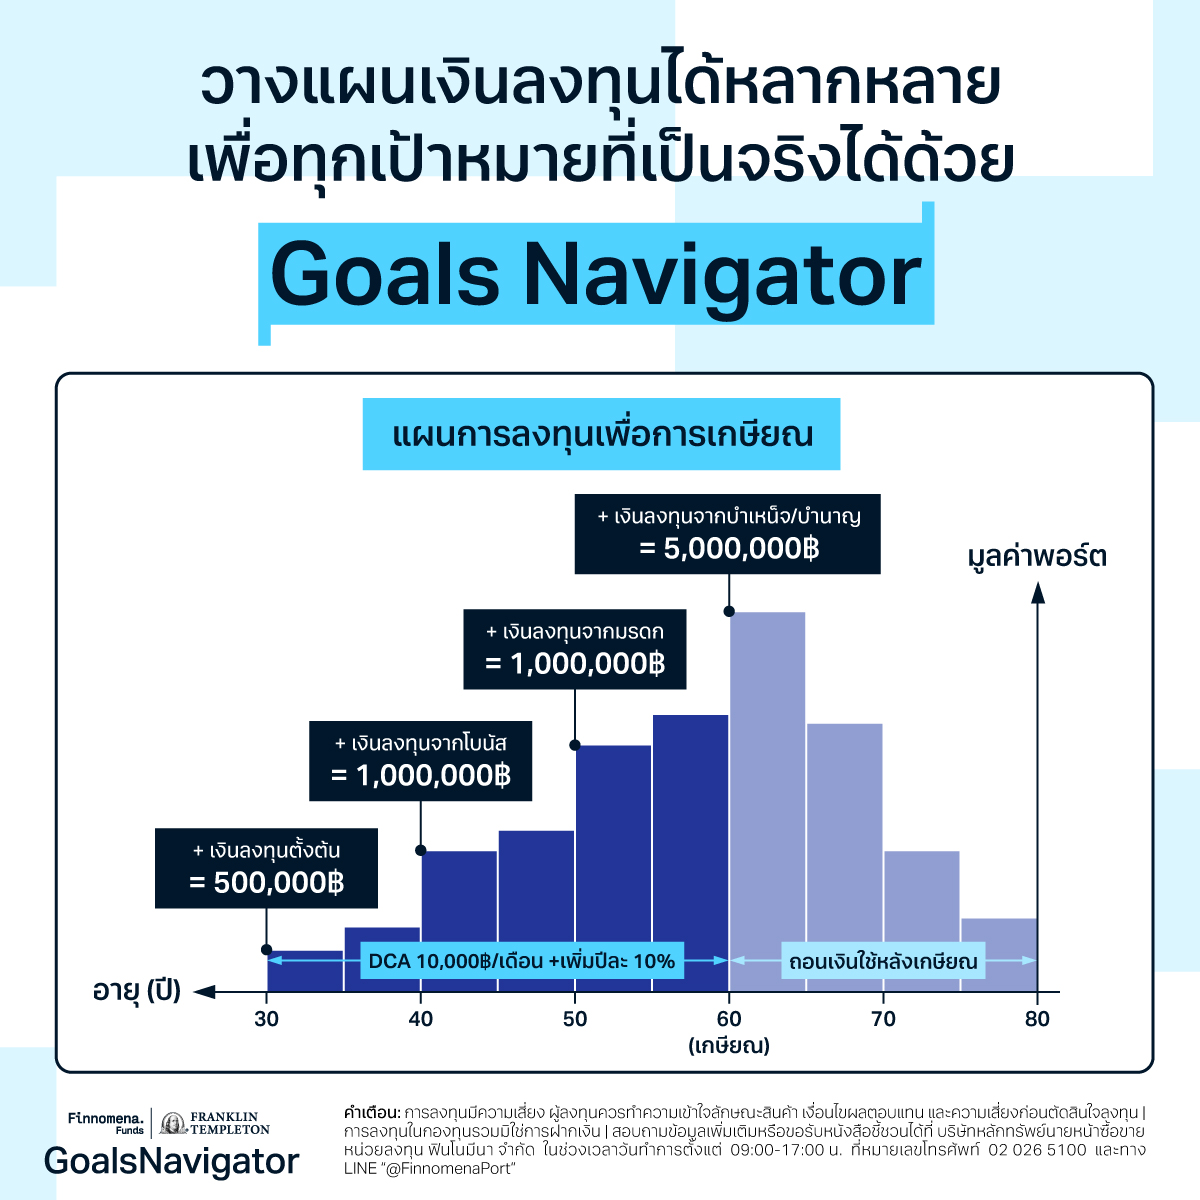 วางแผนเงินลงทุนได้หลากหลาย เพื่อทุกเป้าหมายที่เป็นจริงได้ด้วย Goals Navigator